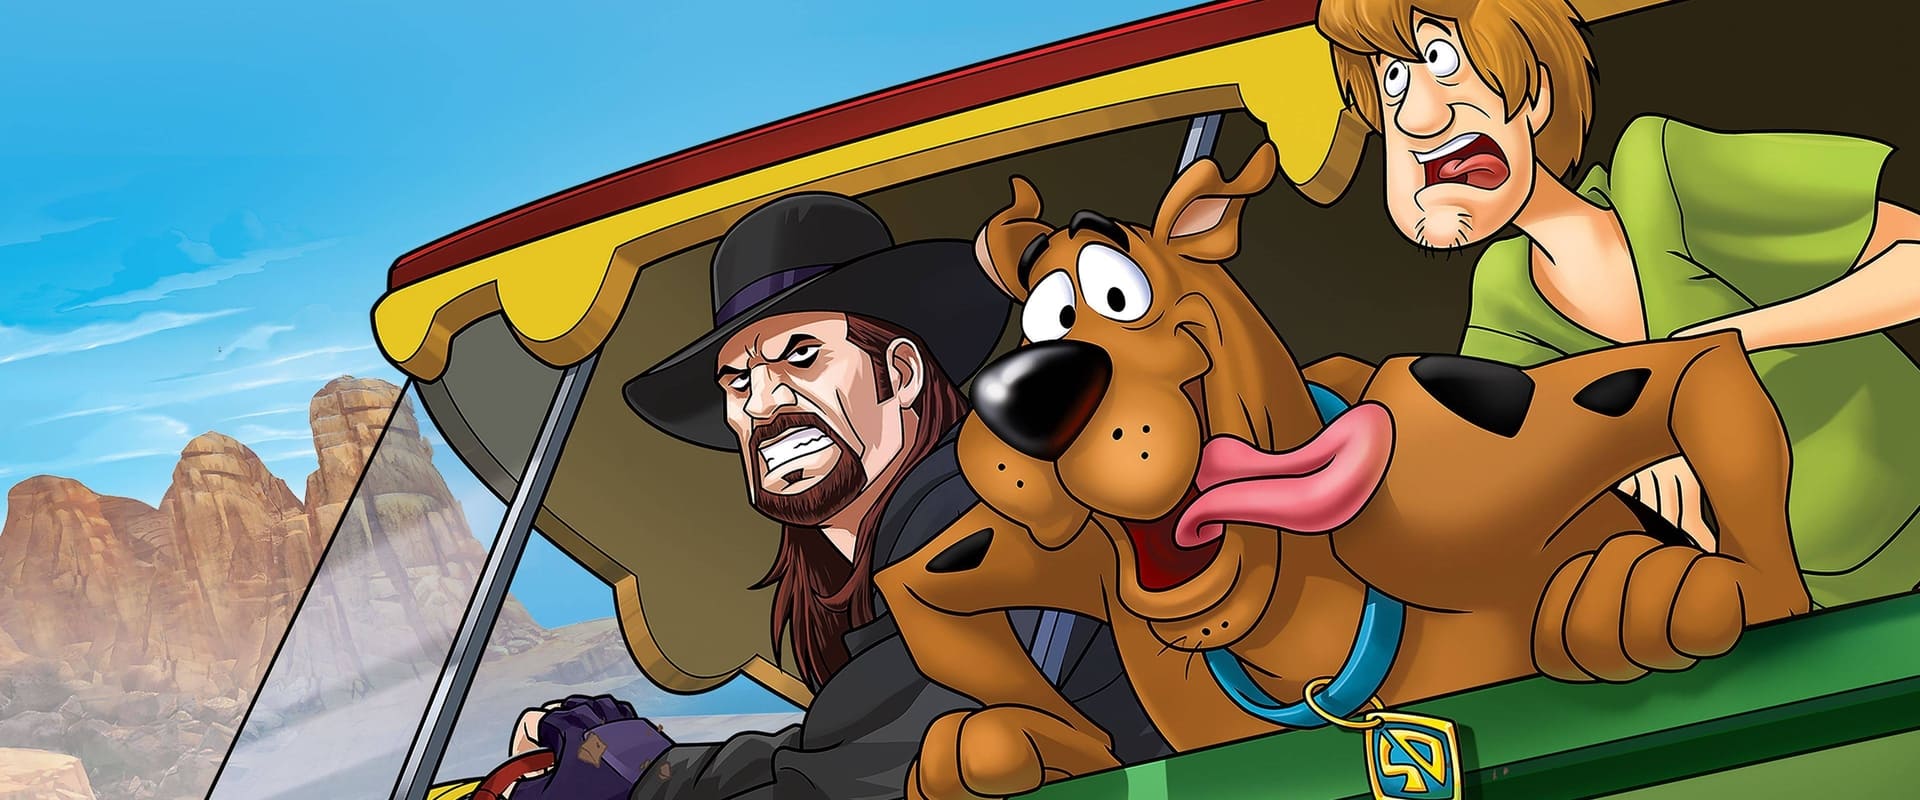 Scooby-Doo i WWE: Potworny wyścig